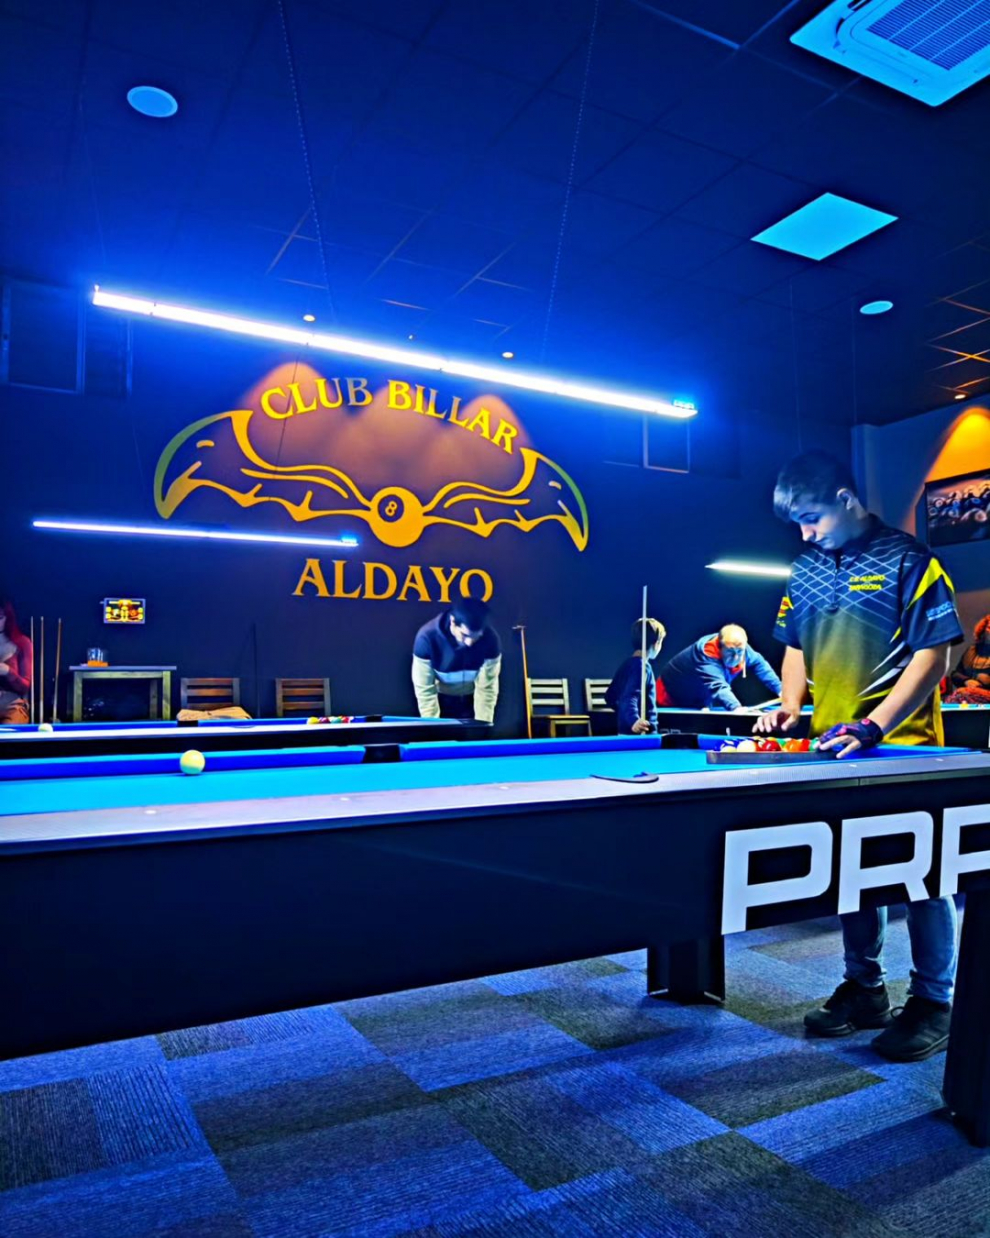 El Club Aldayo se abrió el pasado 18 de noviembre y ofrece 20 mesas de billar  el mayor de Aragón.